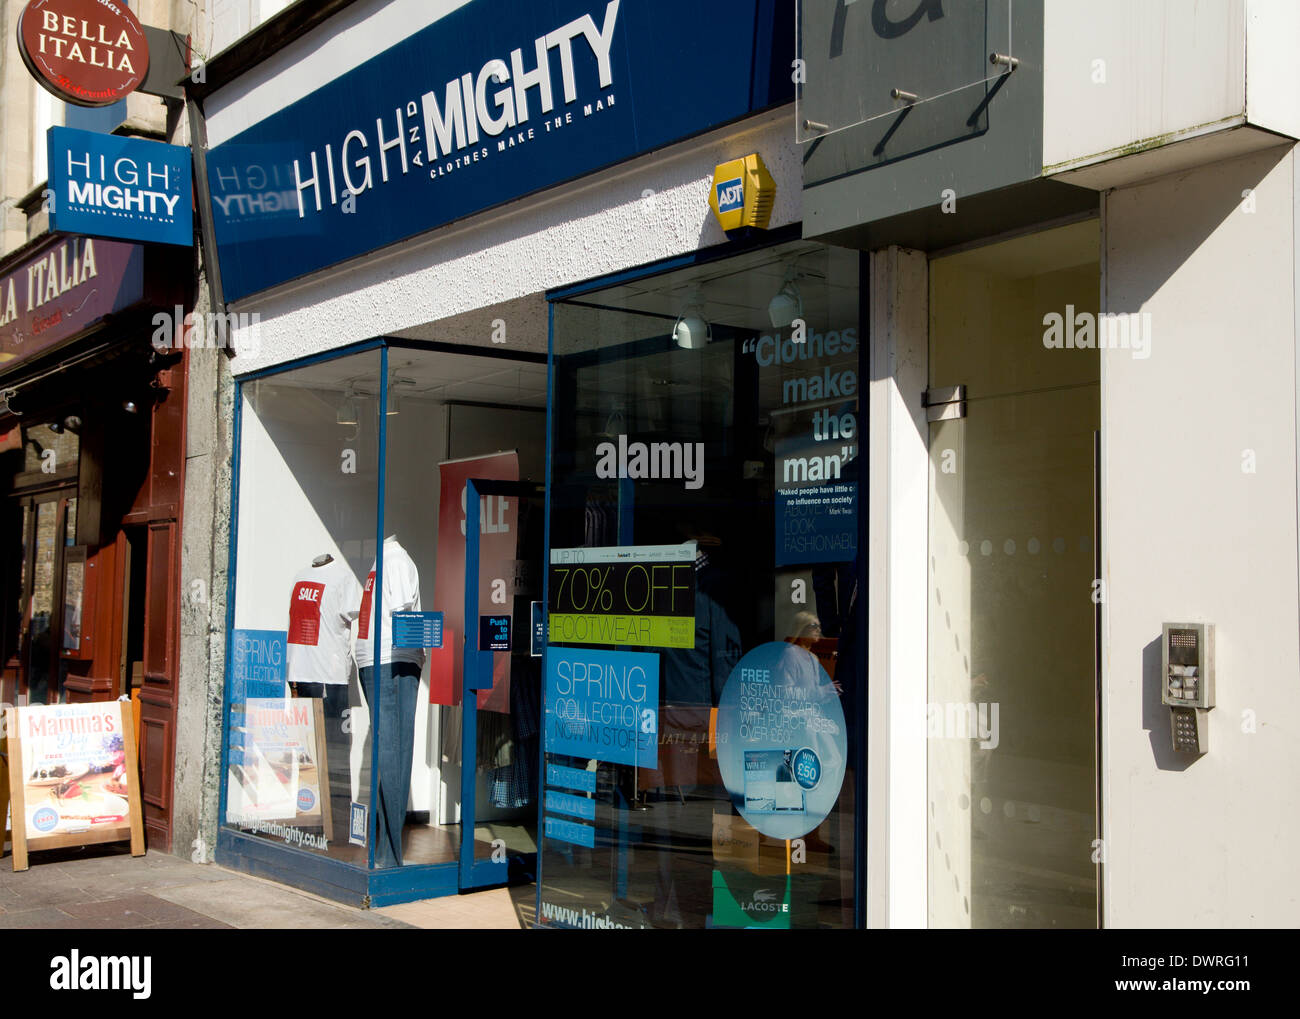 High & Mighty negozio di abbigliamento per il più grande uomo, High Street, Cardiff, Galles. Foto Stock